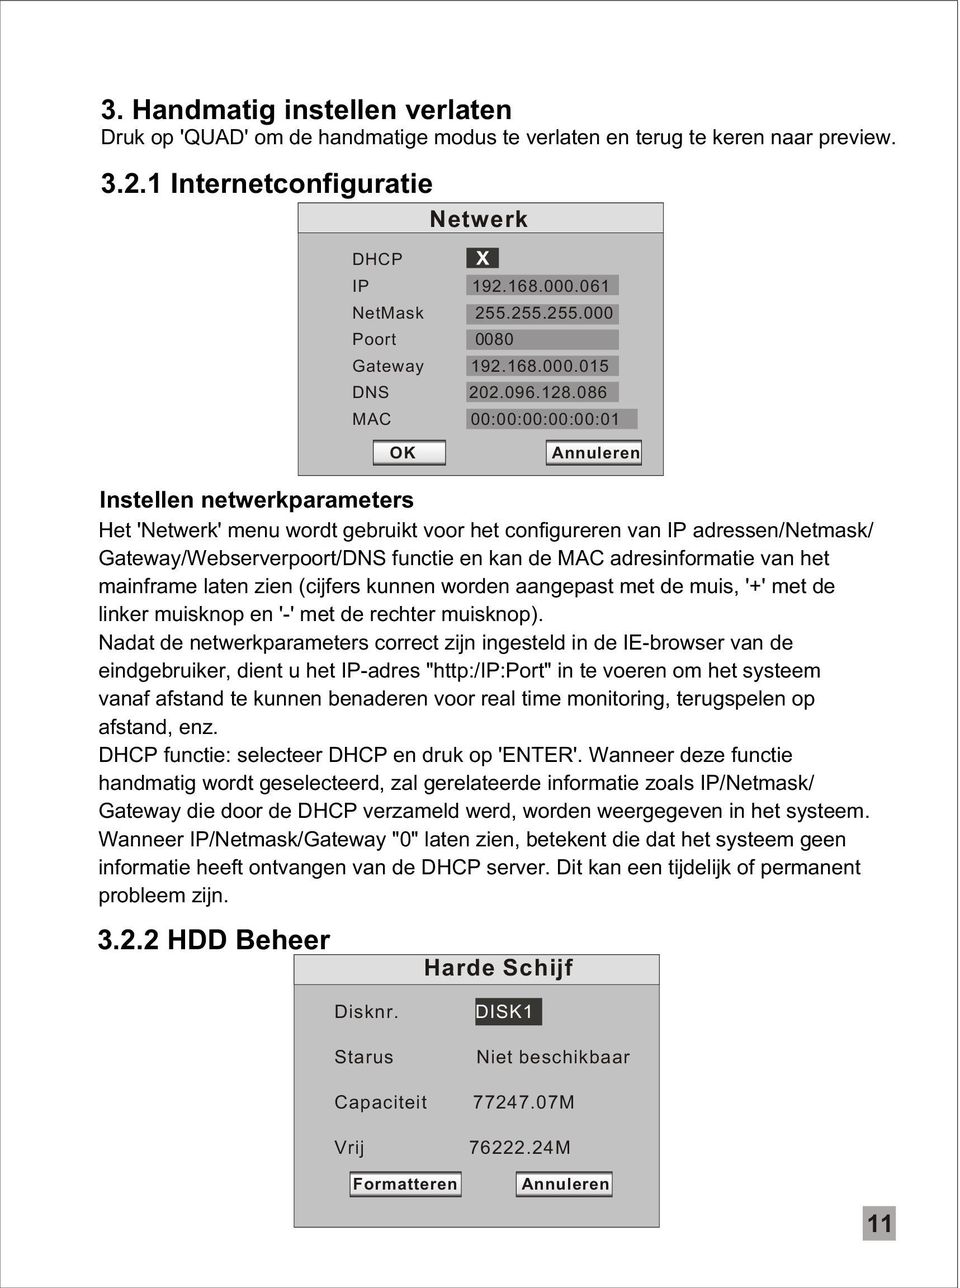 086 MAC 00:00:00:00:00:01 Annuleren Instellen netwerkparameters Het 'Netwerk' menu wordt gebruikt voor het configureren van IP adressen/netmask/ Gateway/Webserverpoort/DNS functie en kan de MAC